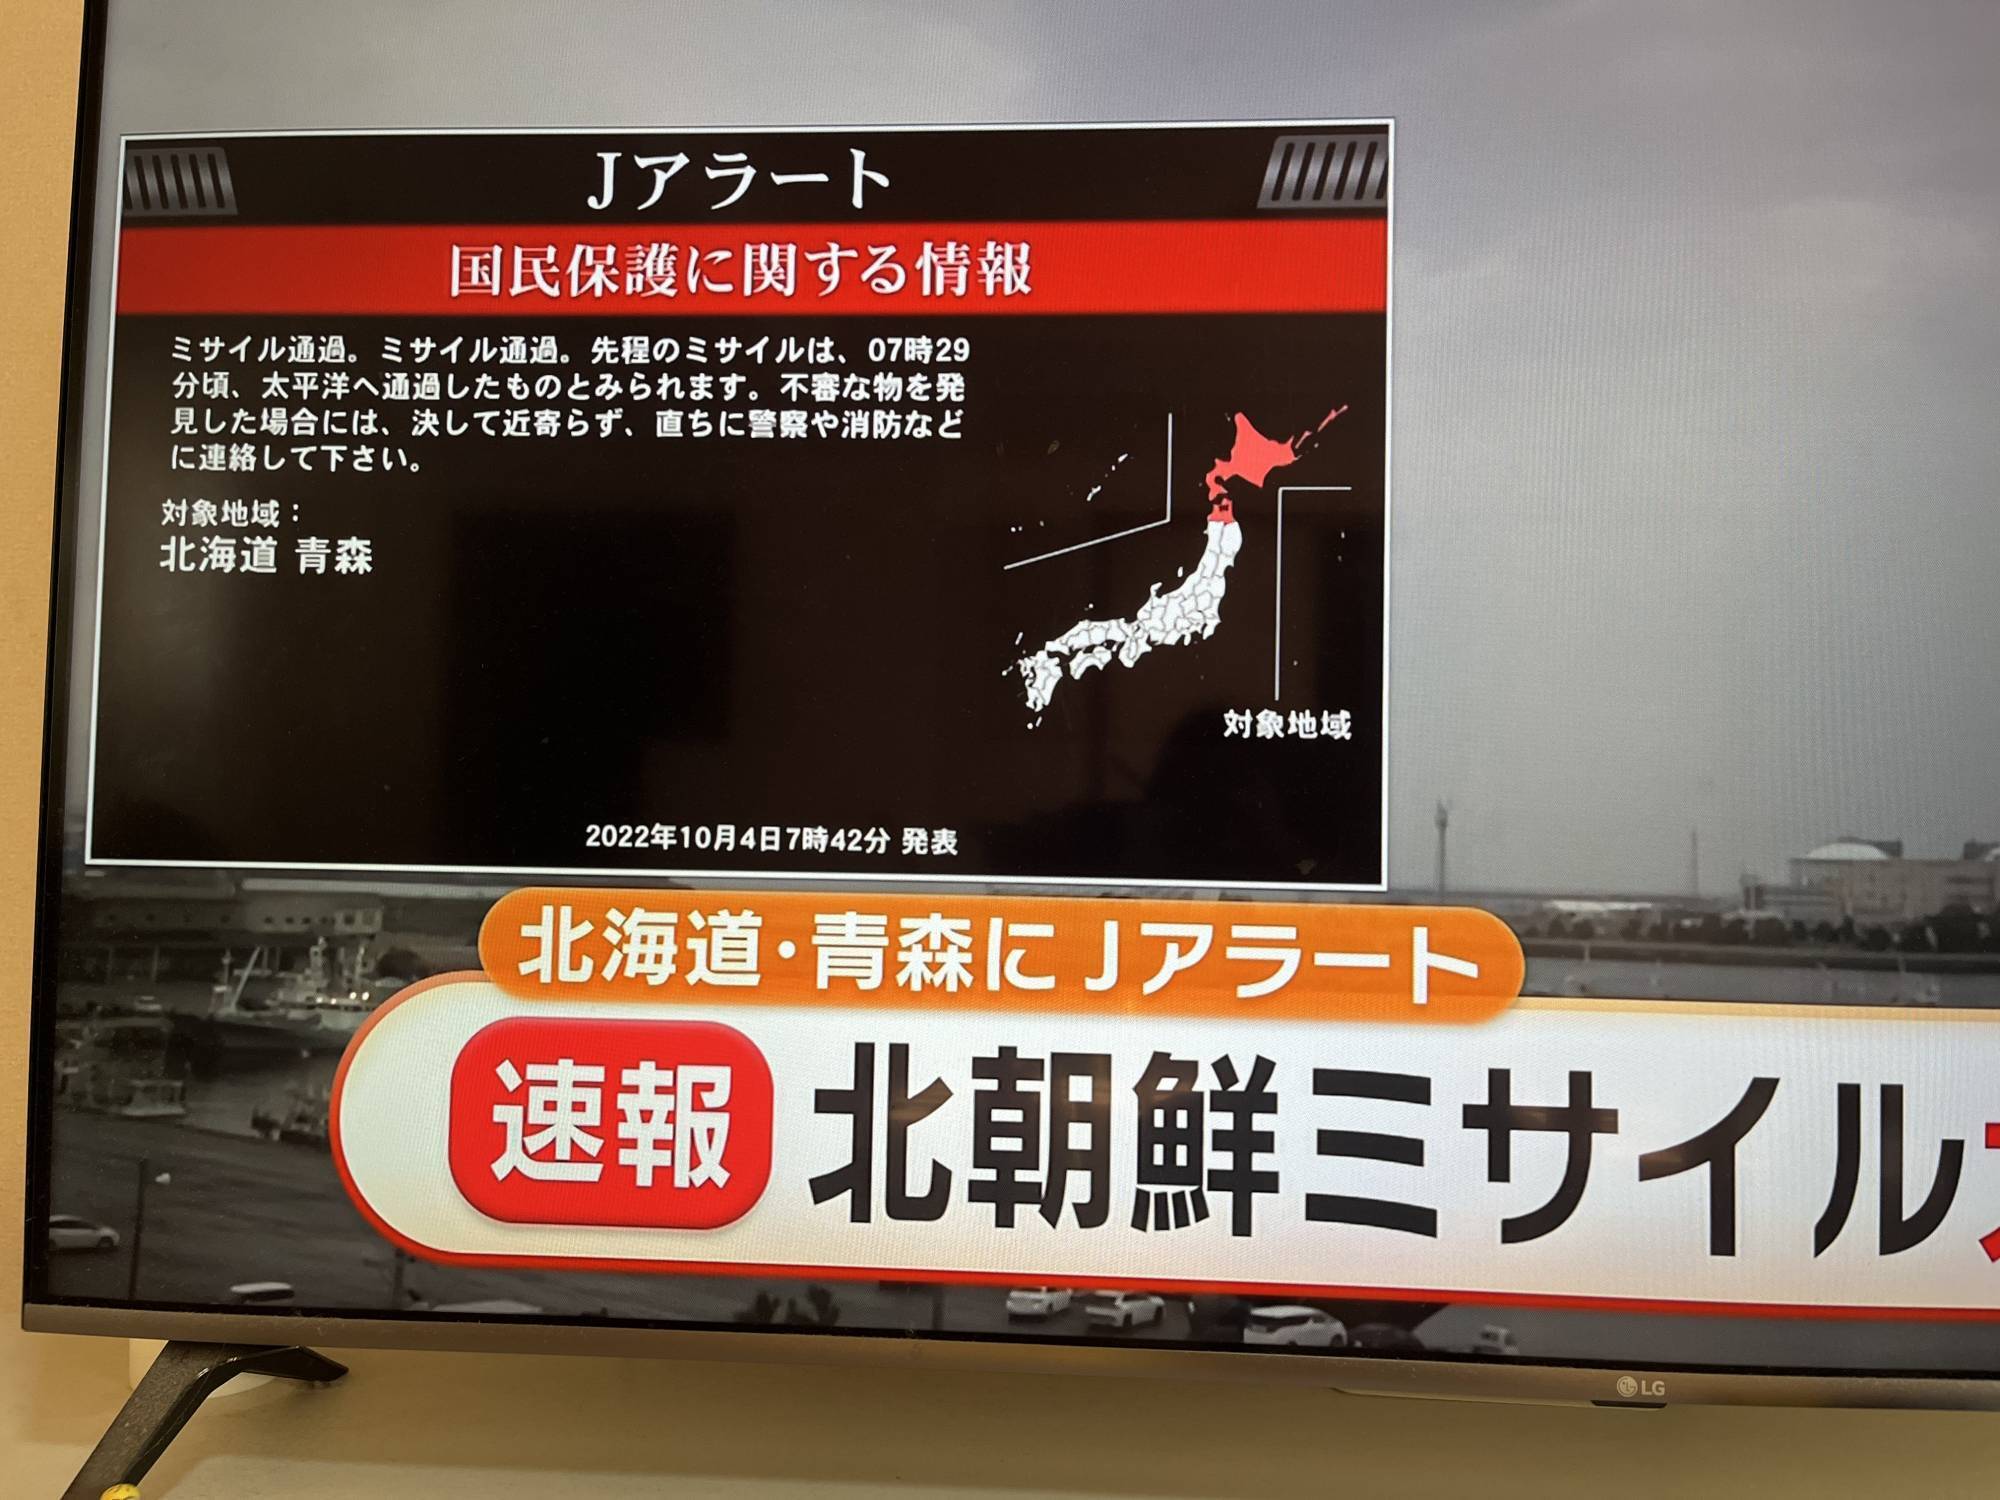 Північна Корея запустила балістичну ракету над Японією: було оголошено повітряну тривогу. Фото та відео